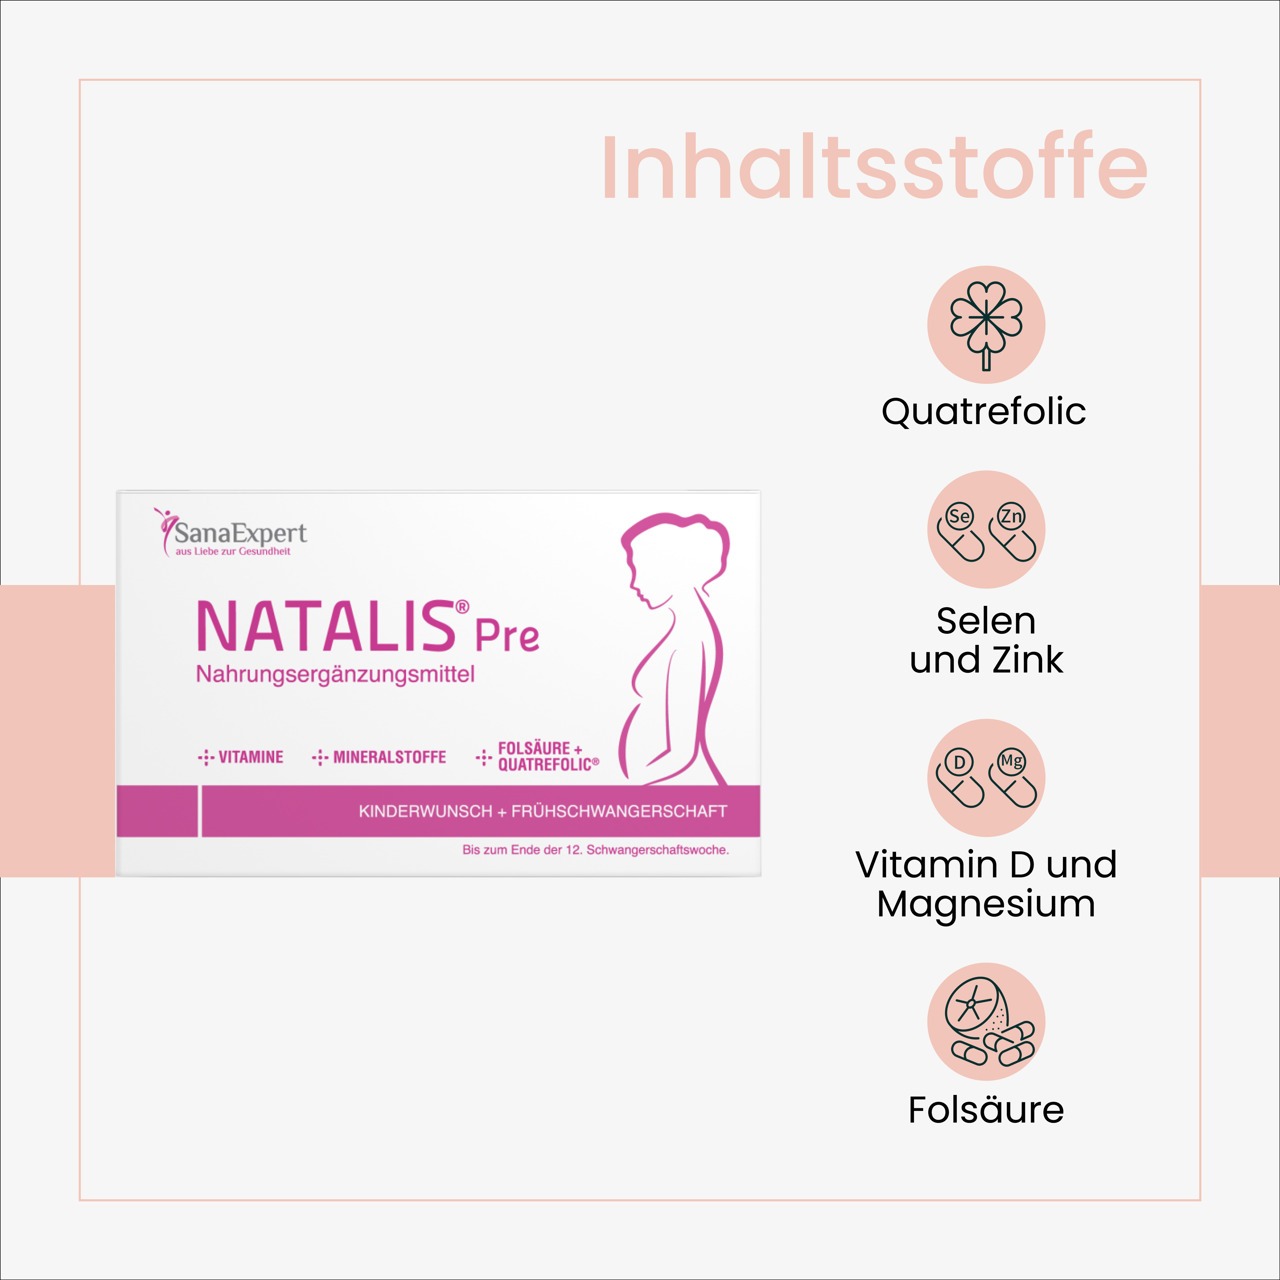 Grafische Darstellung der Inhaltsstoffe von NATALIS® Pre, einschließlich Quatrefolic, Selen und Zink, Vitamin D und Magnesium sowie Folsäure.